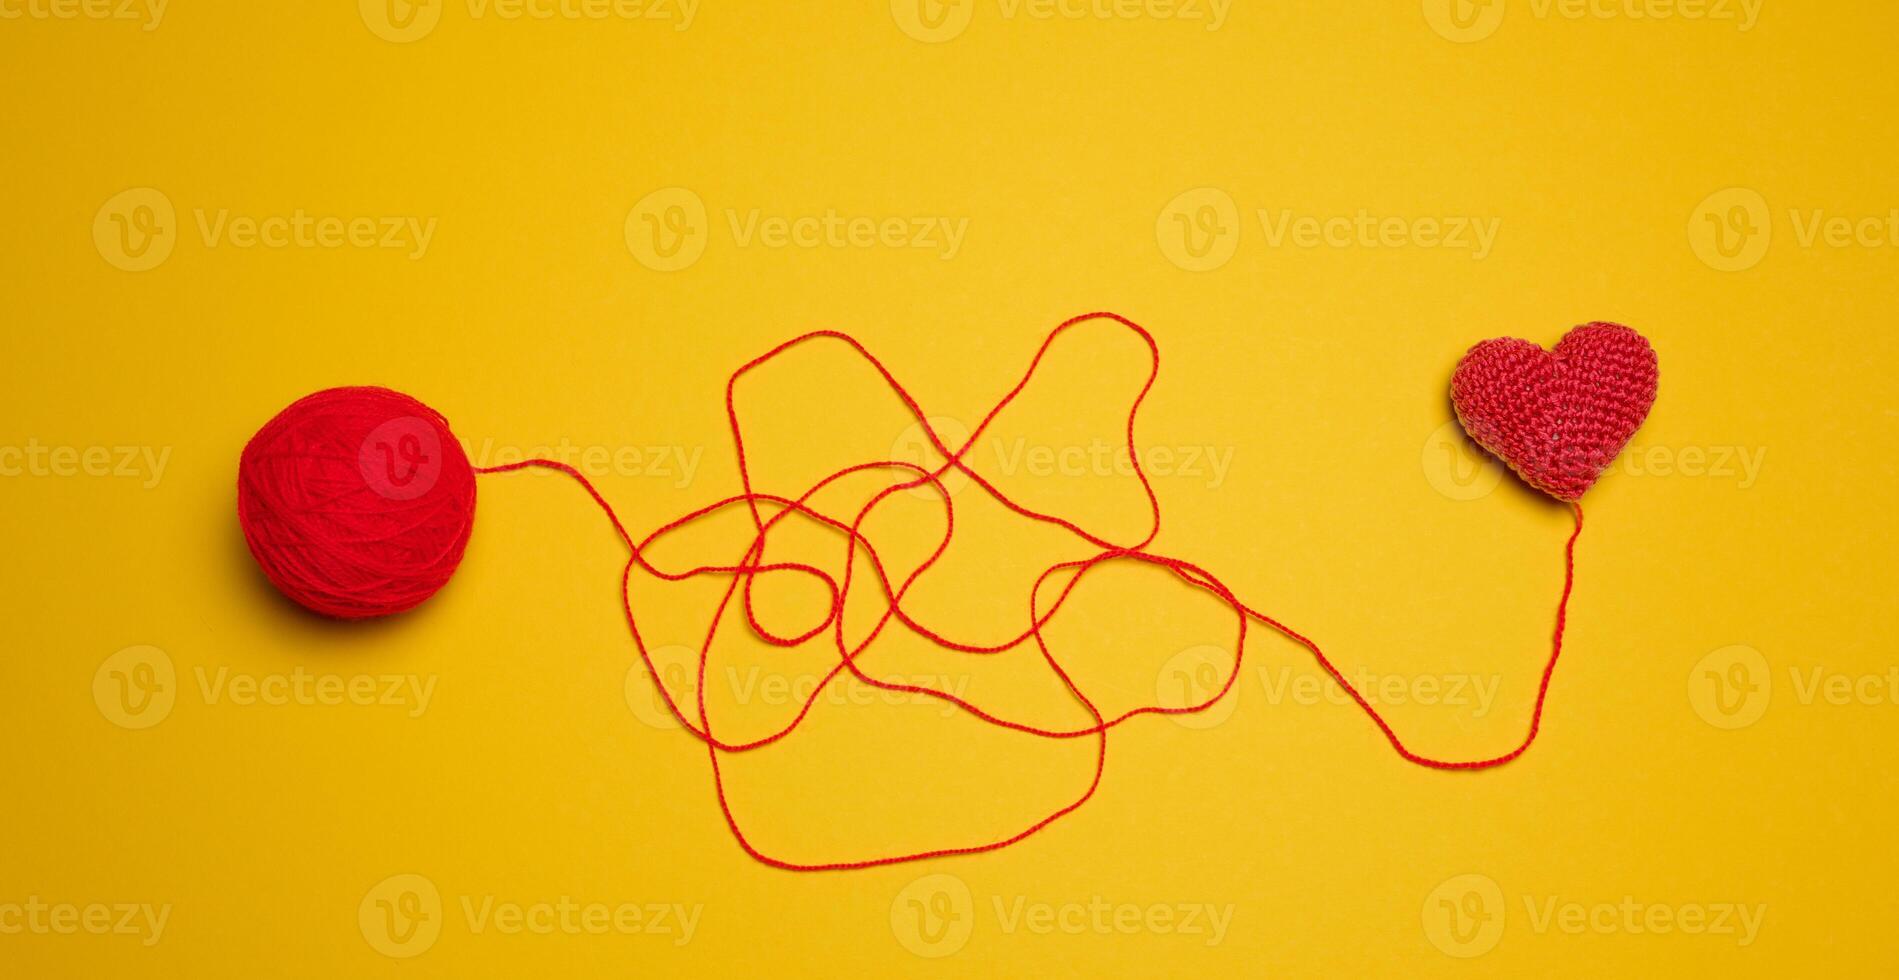 en boll av tråd och en stickat röd hjärta på en gul bakgrund, topp se foto